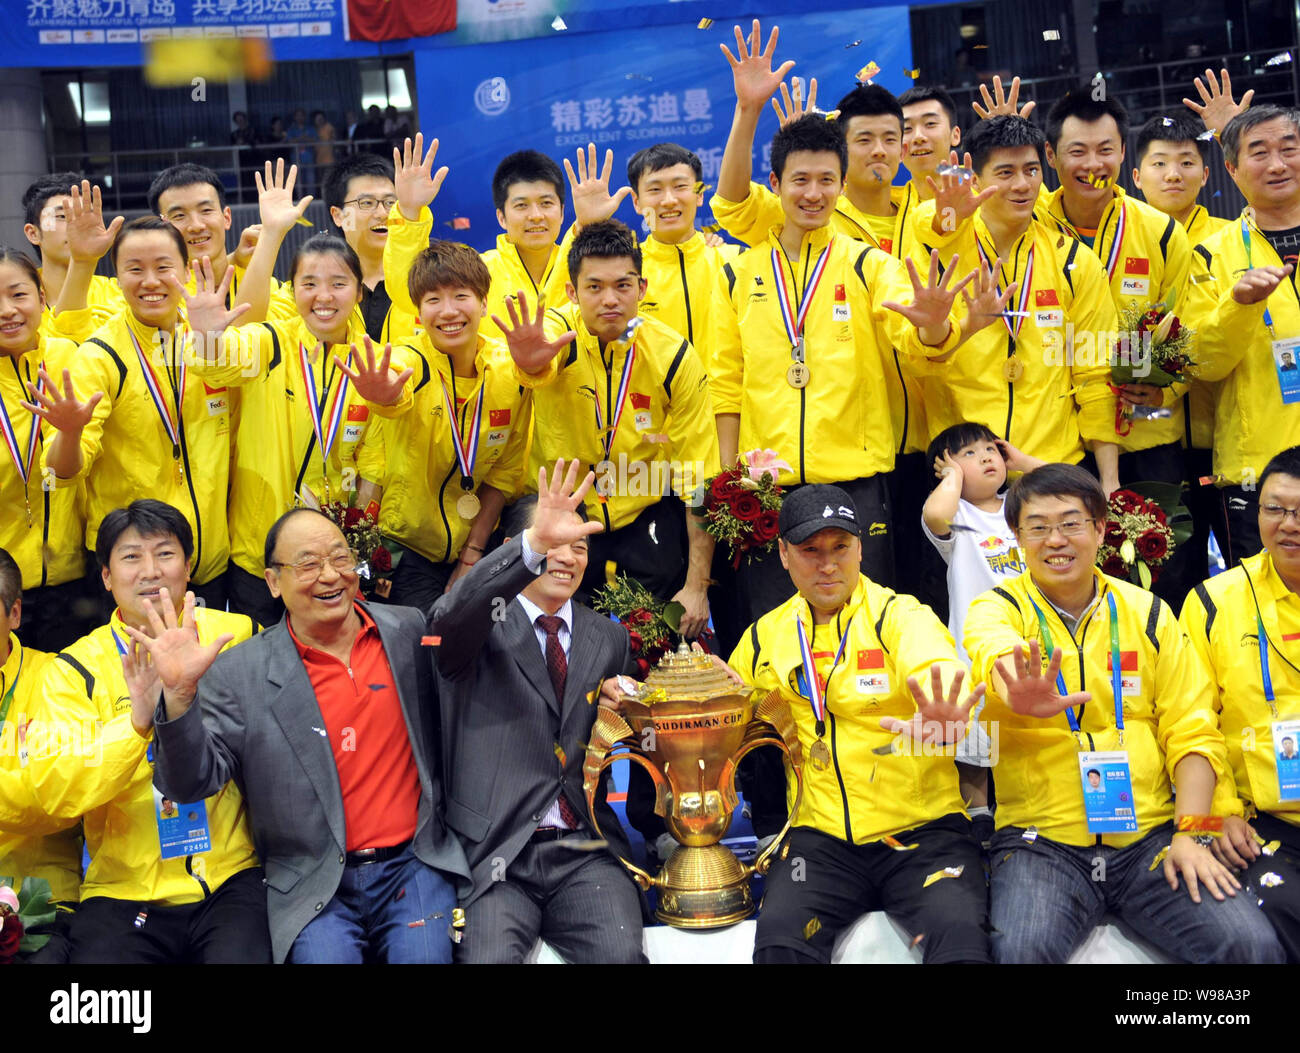 China national badminton team célèbre leur victoire lors de la finale de la Coupe du monde 2011 Sudirman équipe mixte de badminton à Qingdao, Banque D'Images